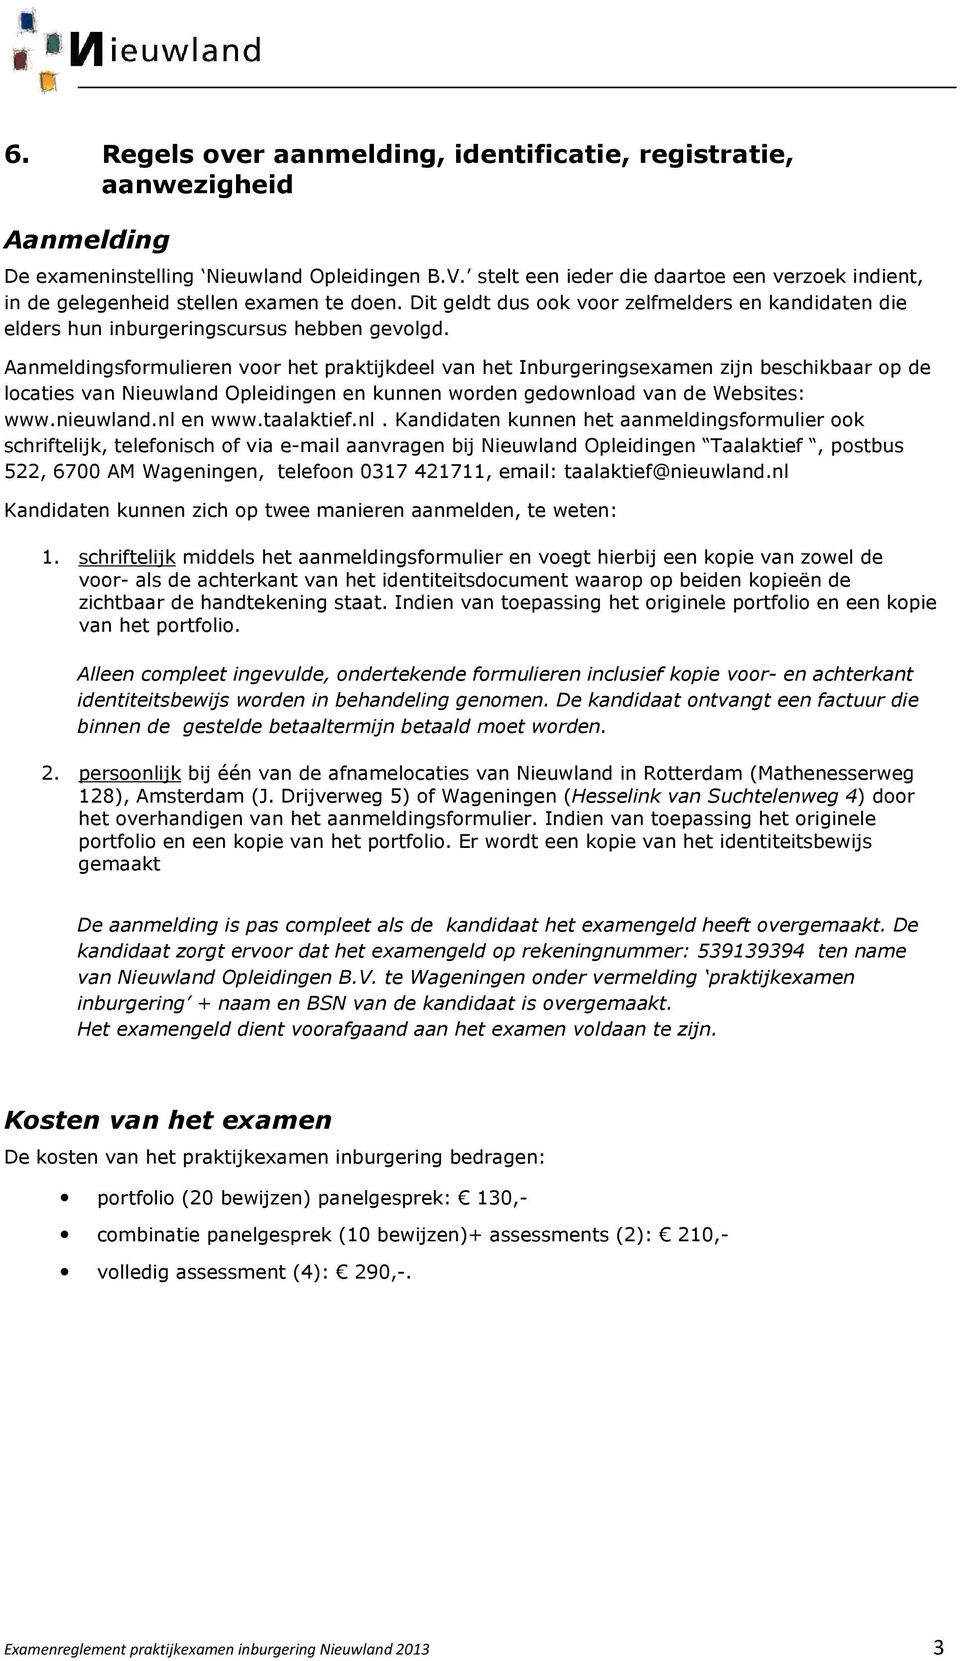 Aanmeldingsformulieren voor het praktijkdeel van het Inburgeringsexamen zijn beschikbaar op de locaties van Nieuwland Opleidingen en kunnen worden gedownload van de Websites: www.nieuwland.nl en www.